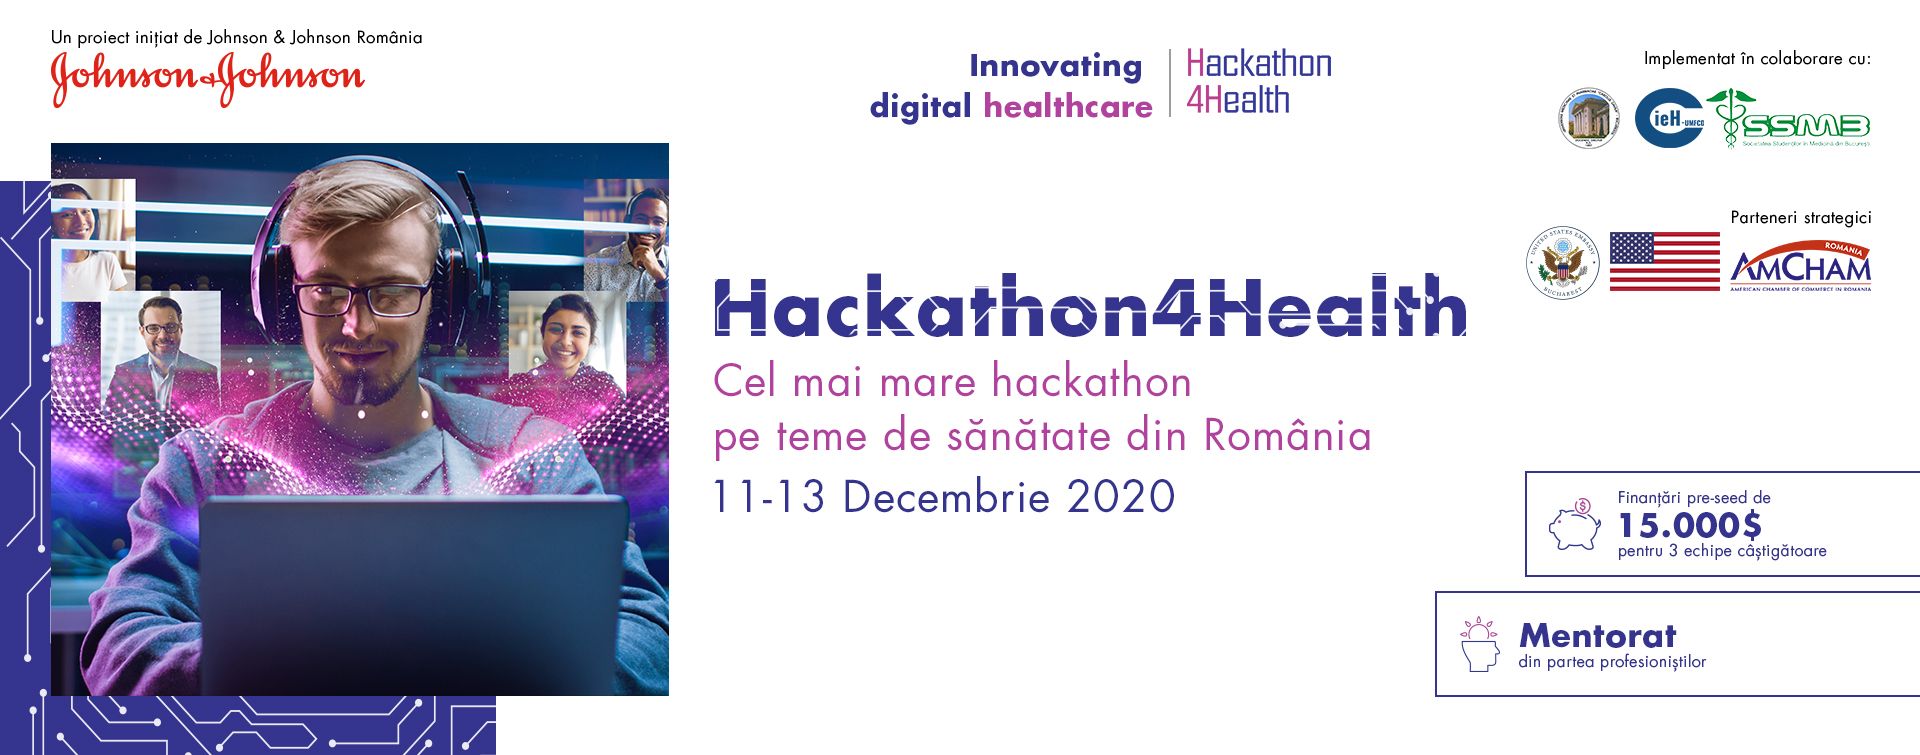 Hackathon4Health